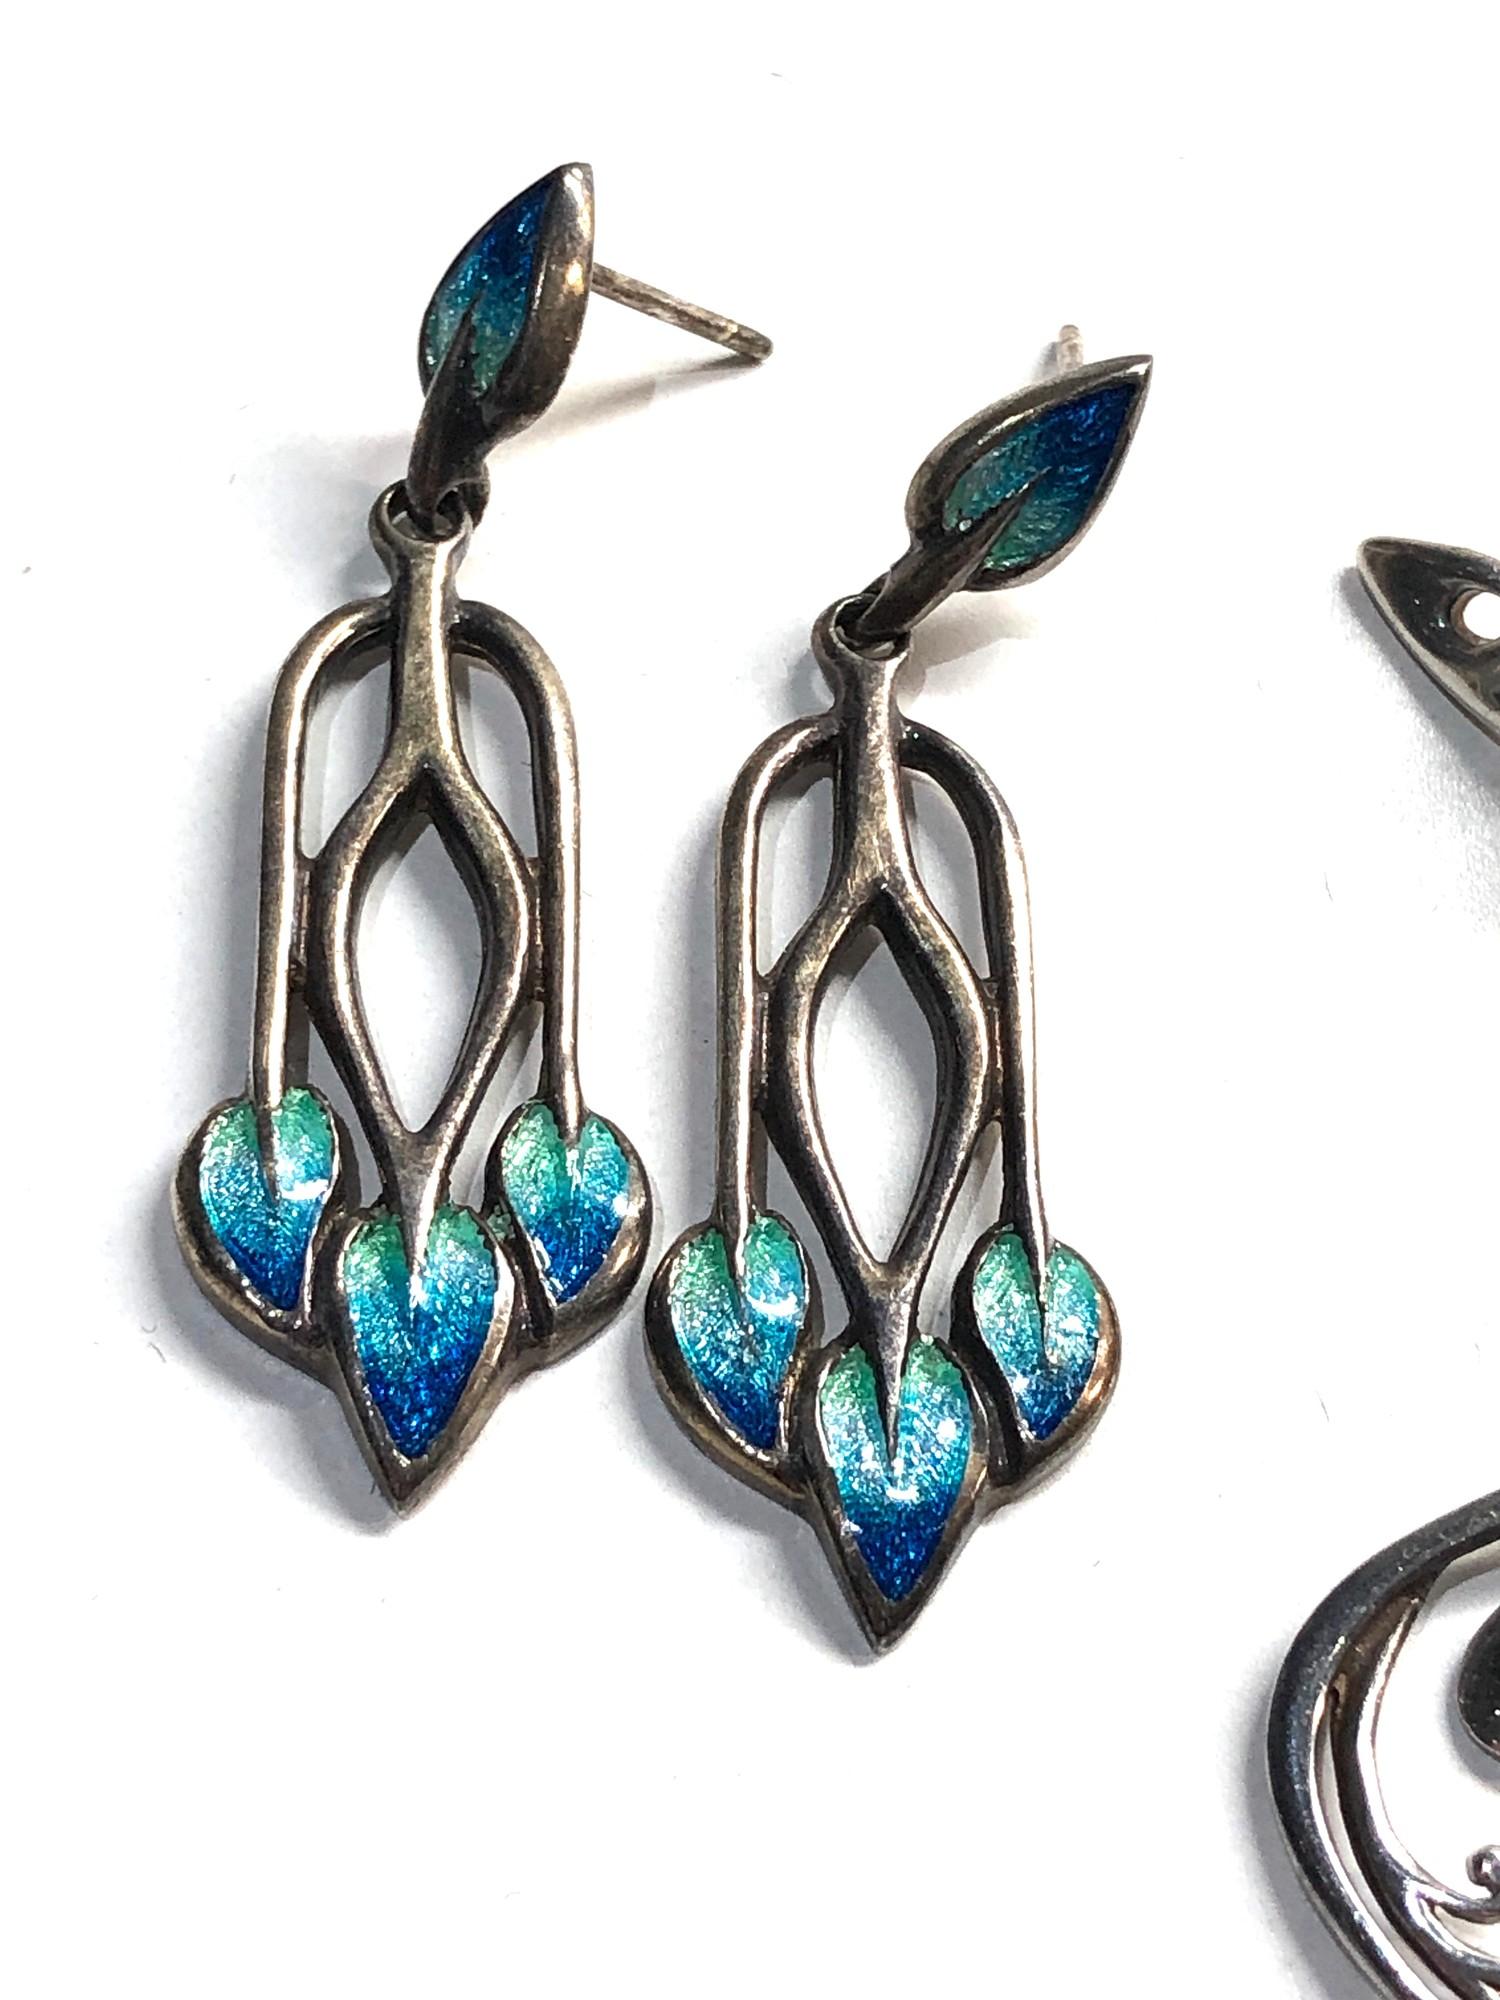 2 Ola Gories earrings 1 set enamelled - Image 3 of 3